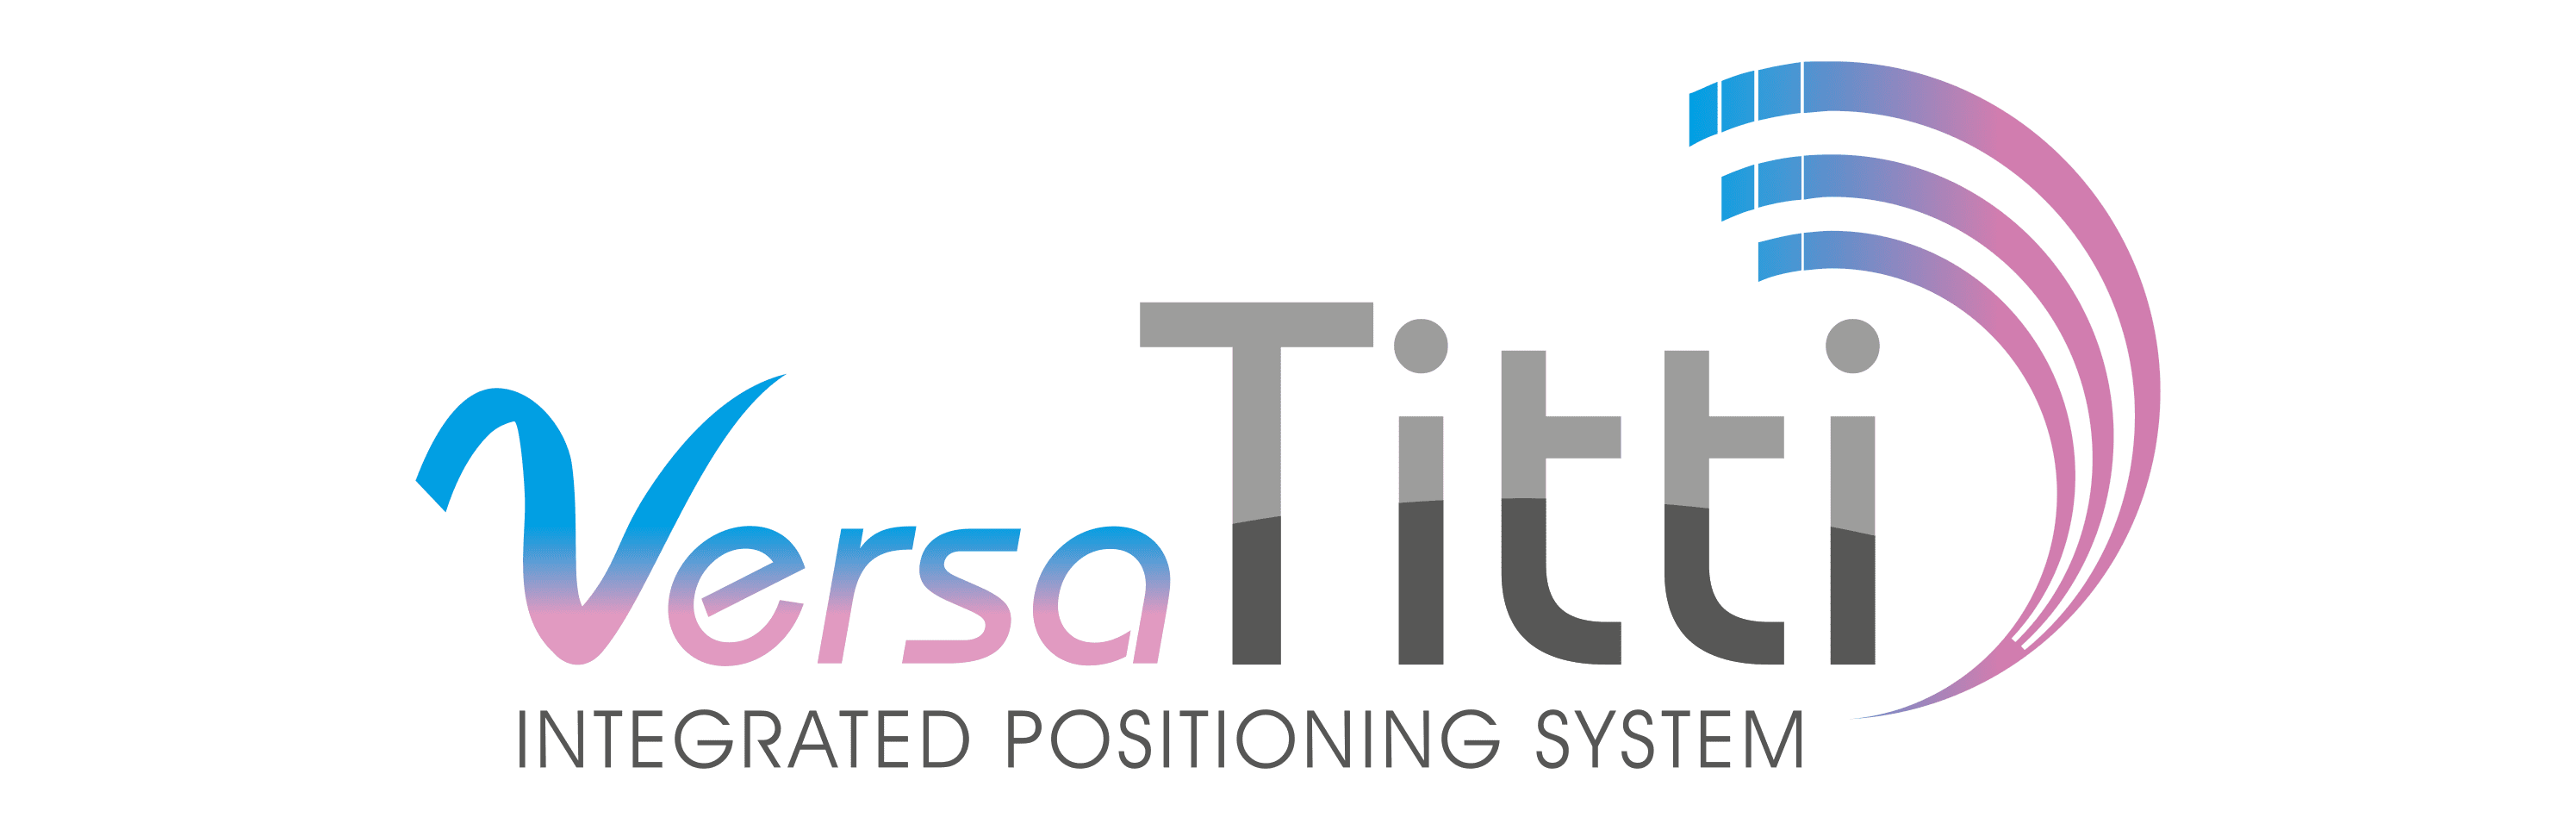 Logo Versa Titti